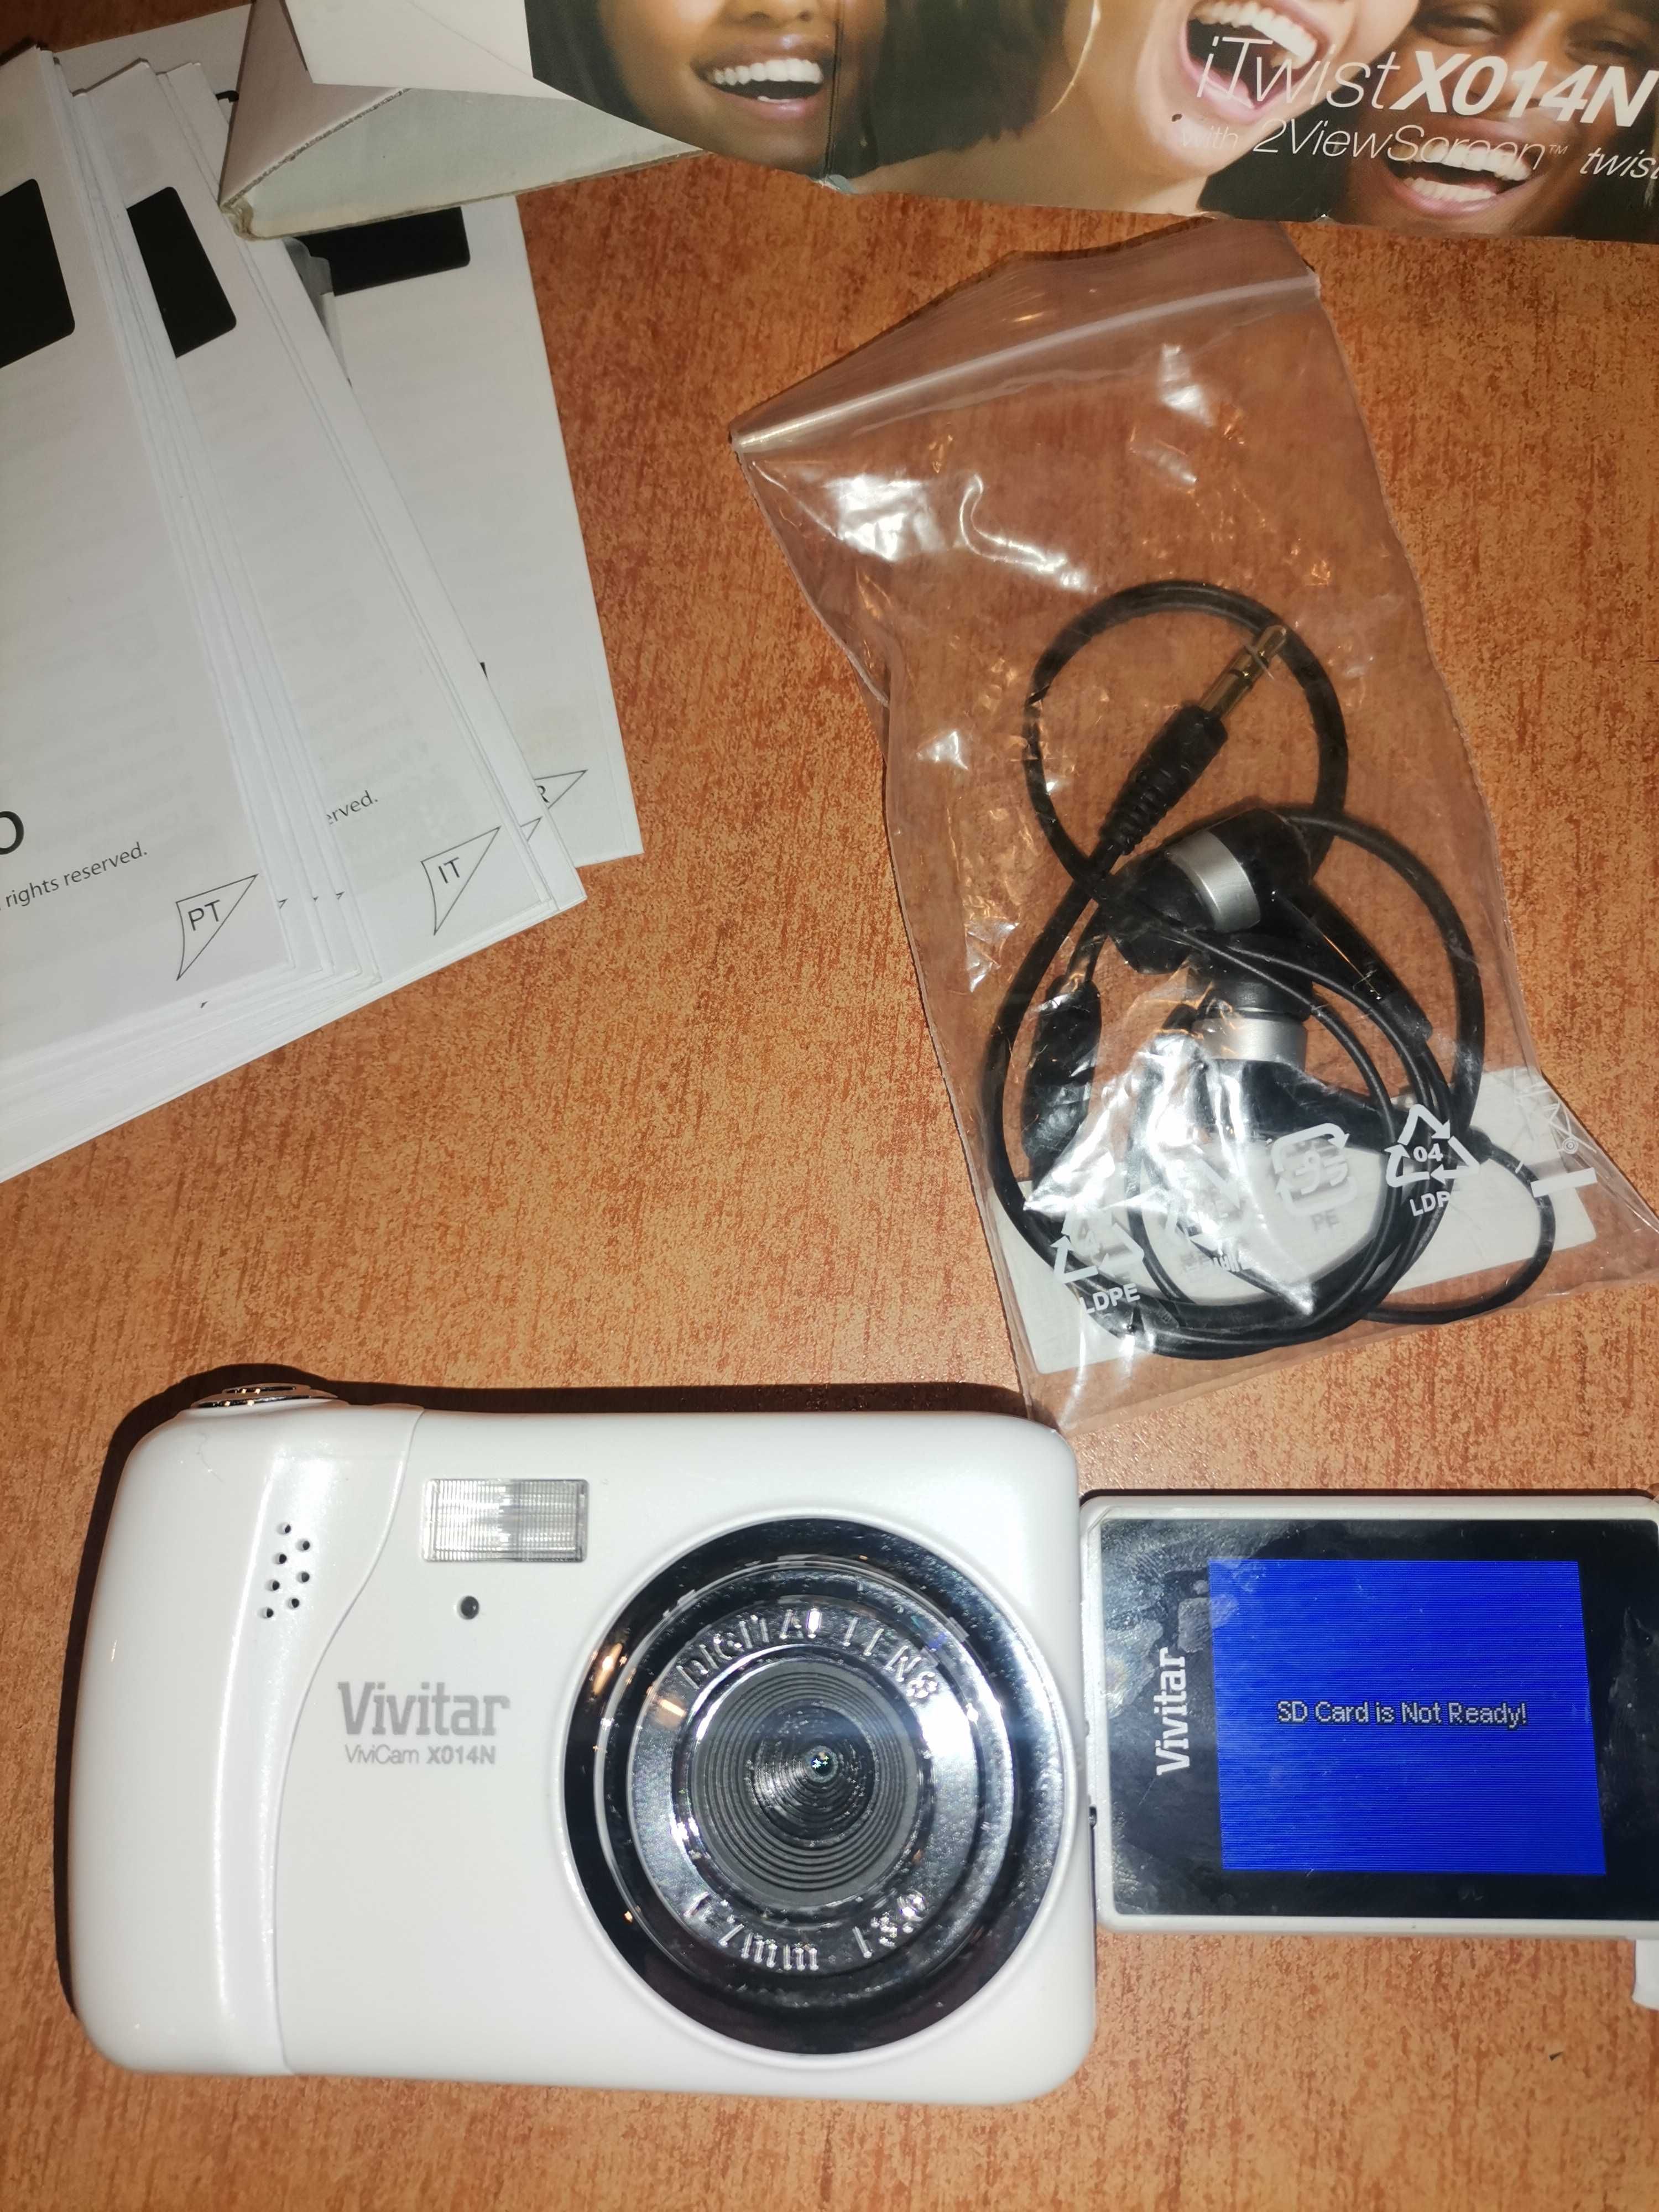 Продавам  НОВА камера, в кутия  IITWIST x014N